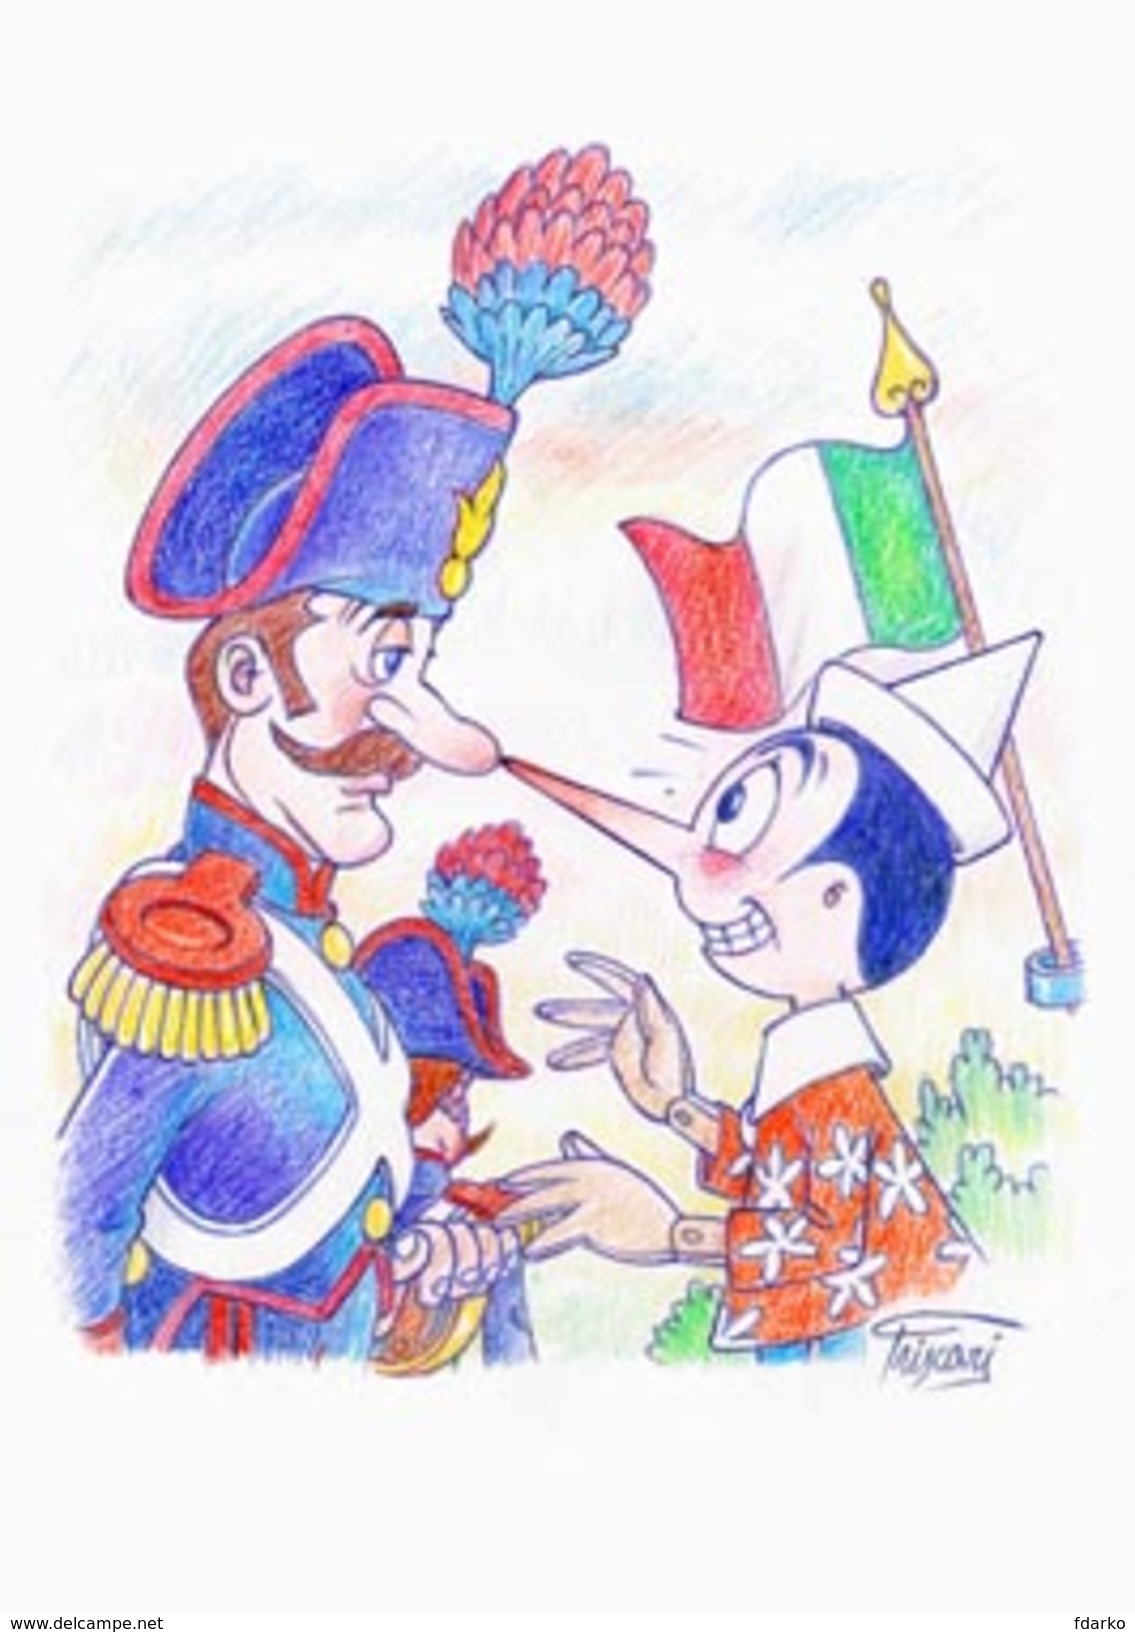 Set Pazzle Pinocchio Fairy with blue hair Cofanetto gruppo 11+2 Cartoline Pinocchio e i Carabinieri Puzzle Pescia lotto